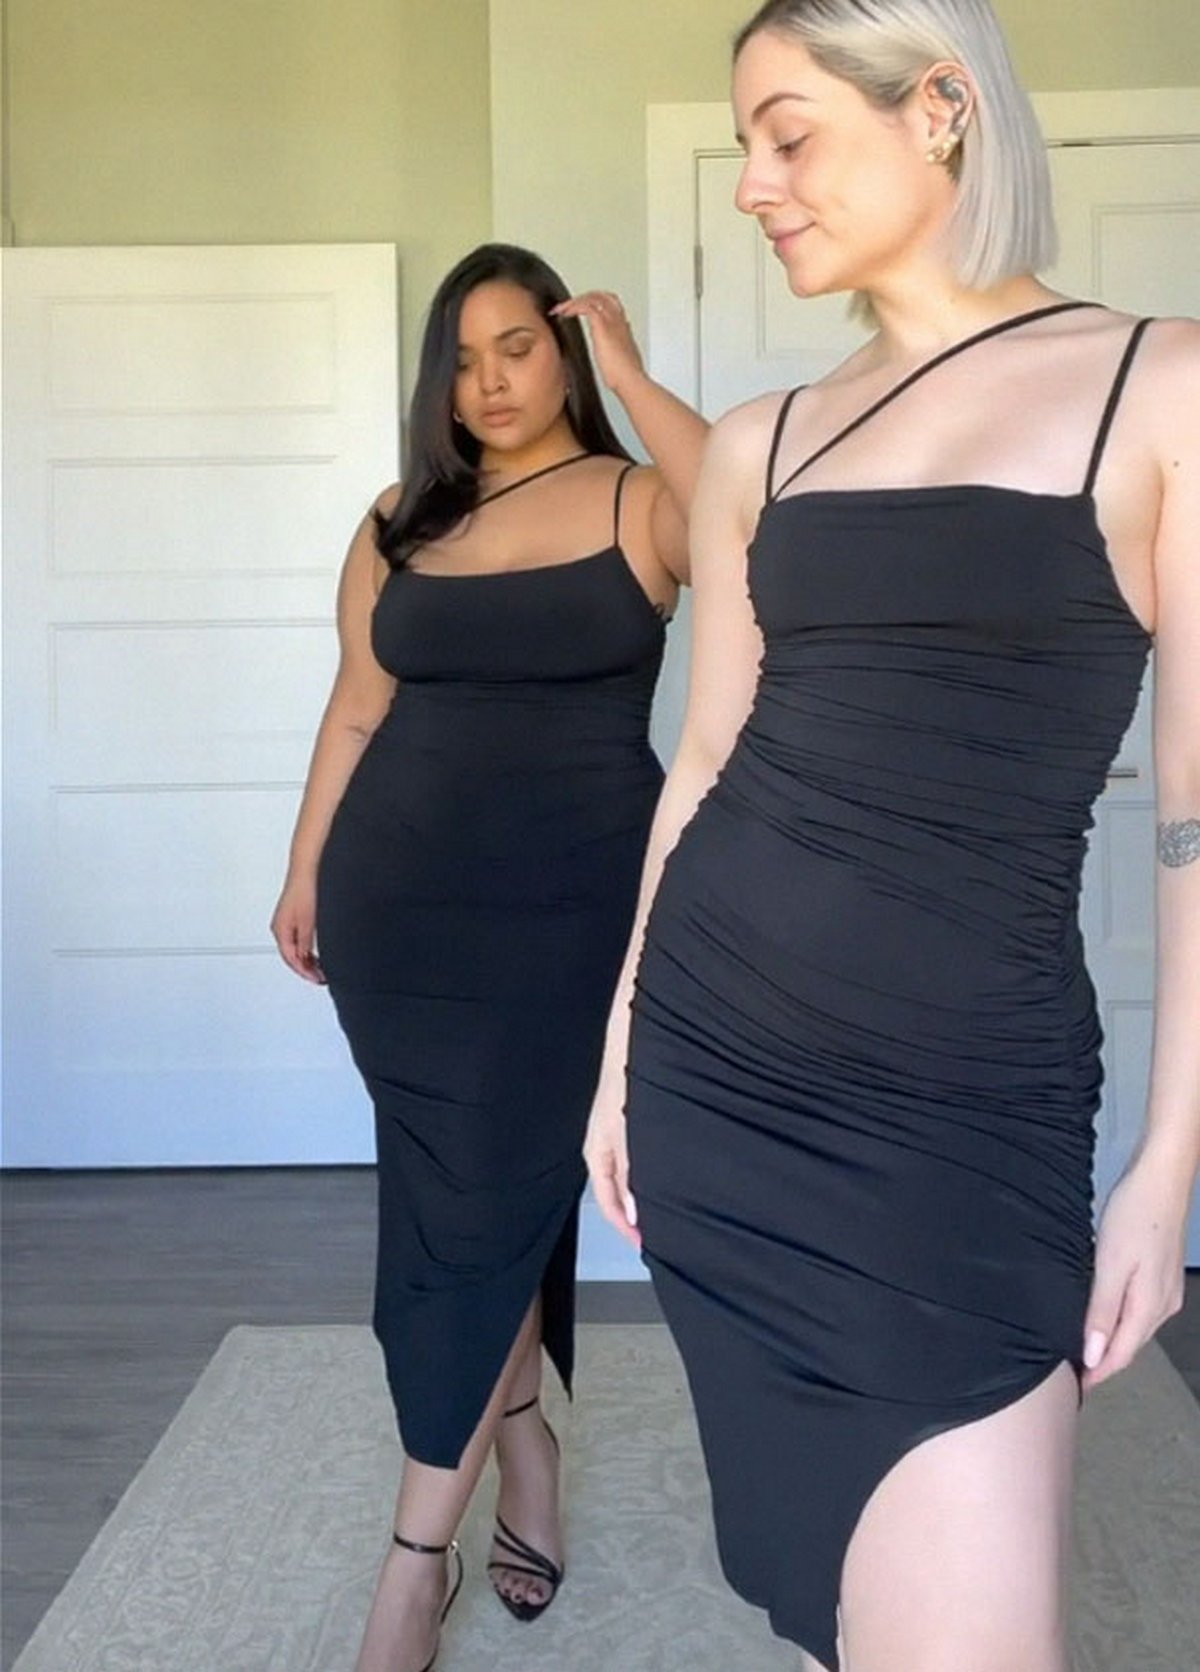 Ces deux amies montrent ce que donne la même tenue sur leurs tailles différentes